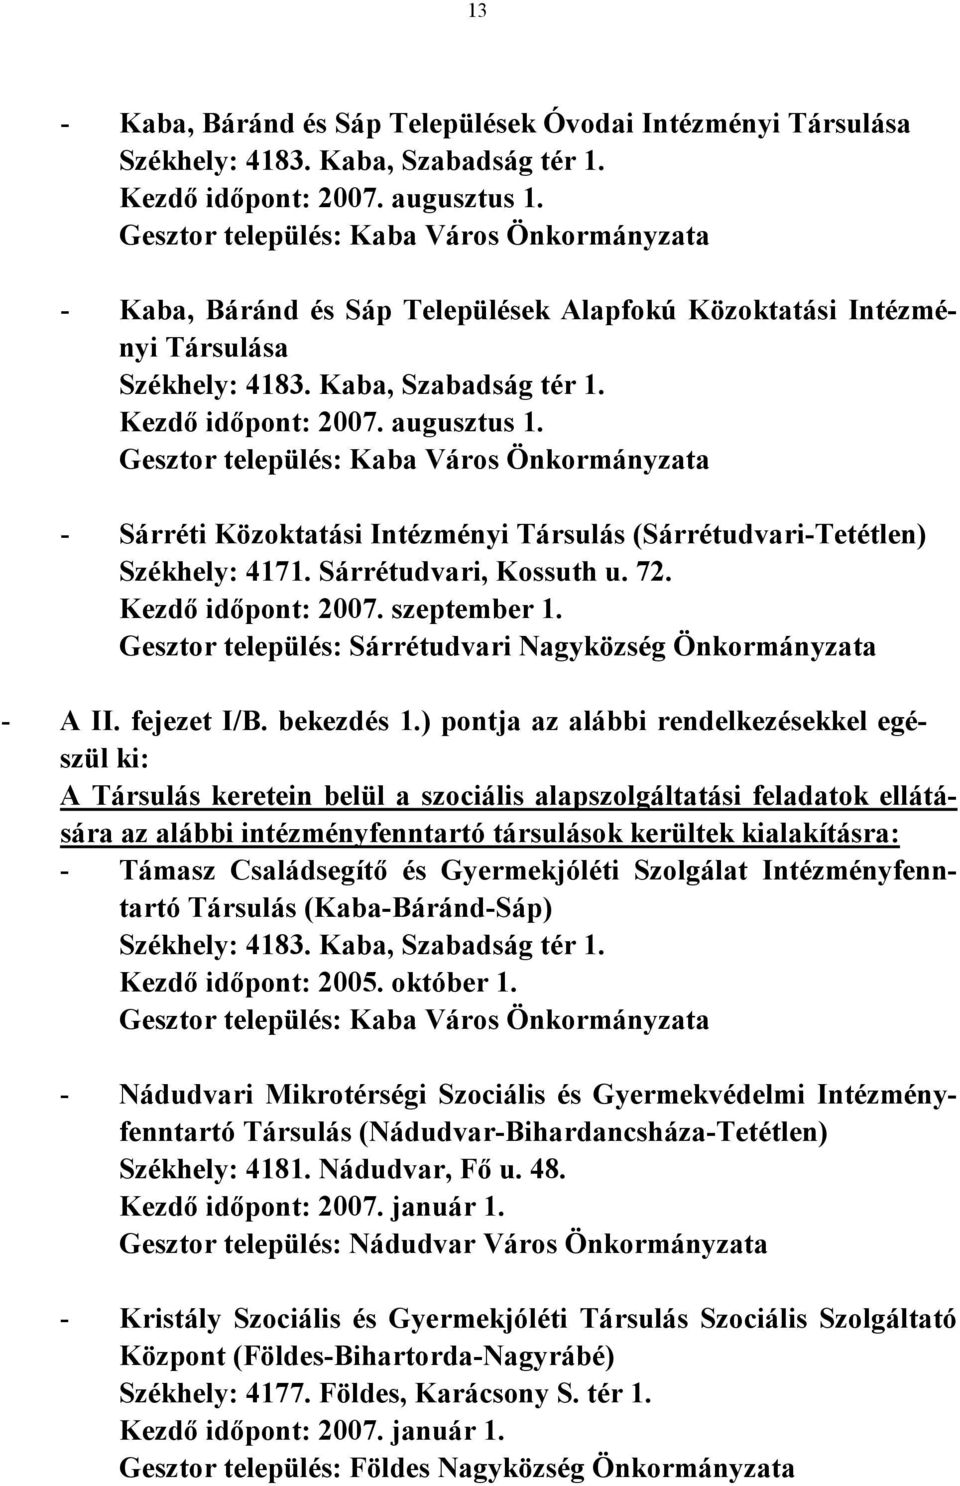 Gesztor település: Kaba Város Önkormányzata - Sárréti Közoktatási Intézményi Társulás (Sárrétudvari-Tetétlen) Székhely: 4171. Sárrétudvari, Kossuth u. 72. Kezdő időpont: 2007. szeptember 1.